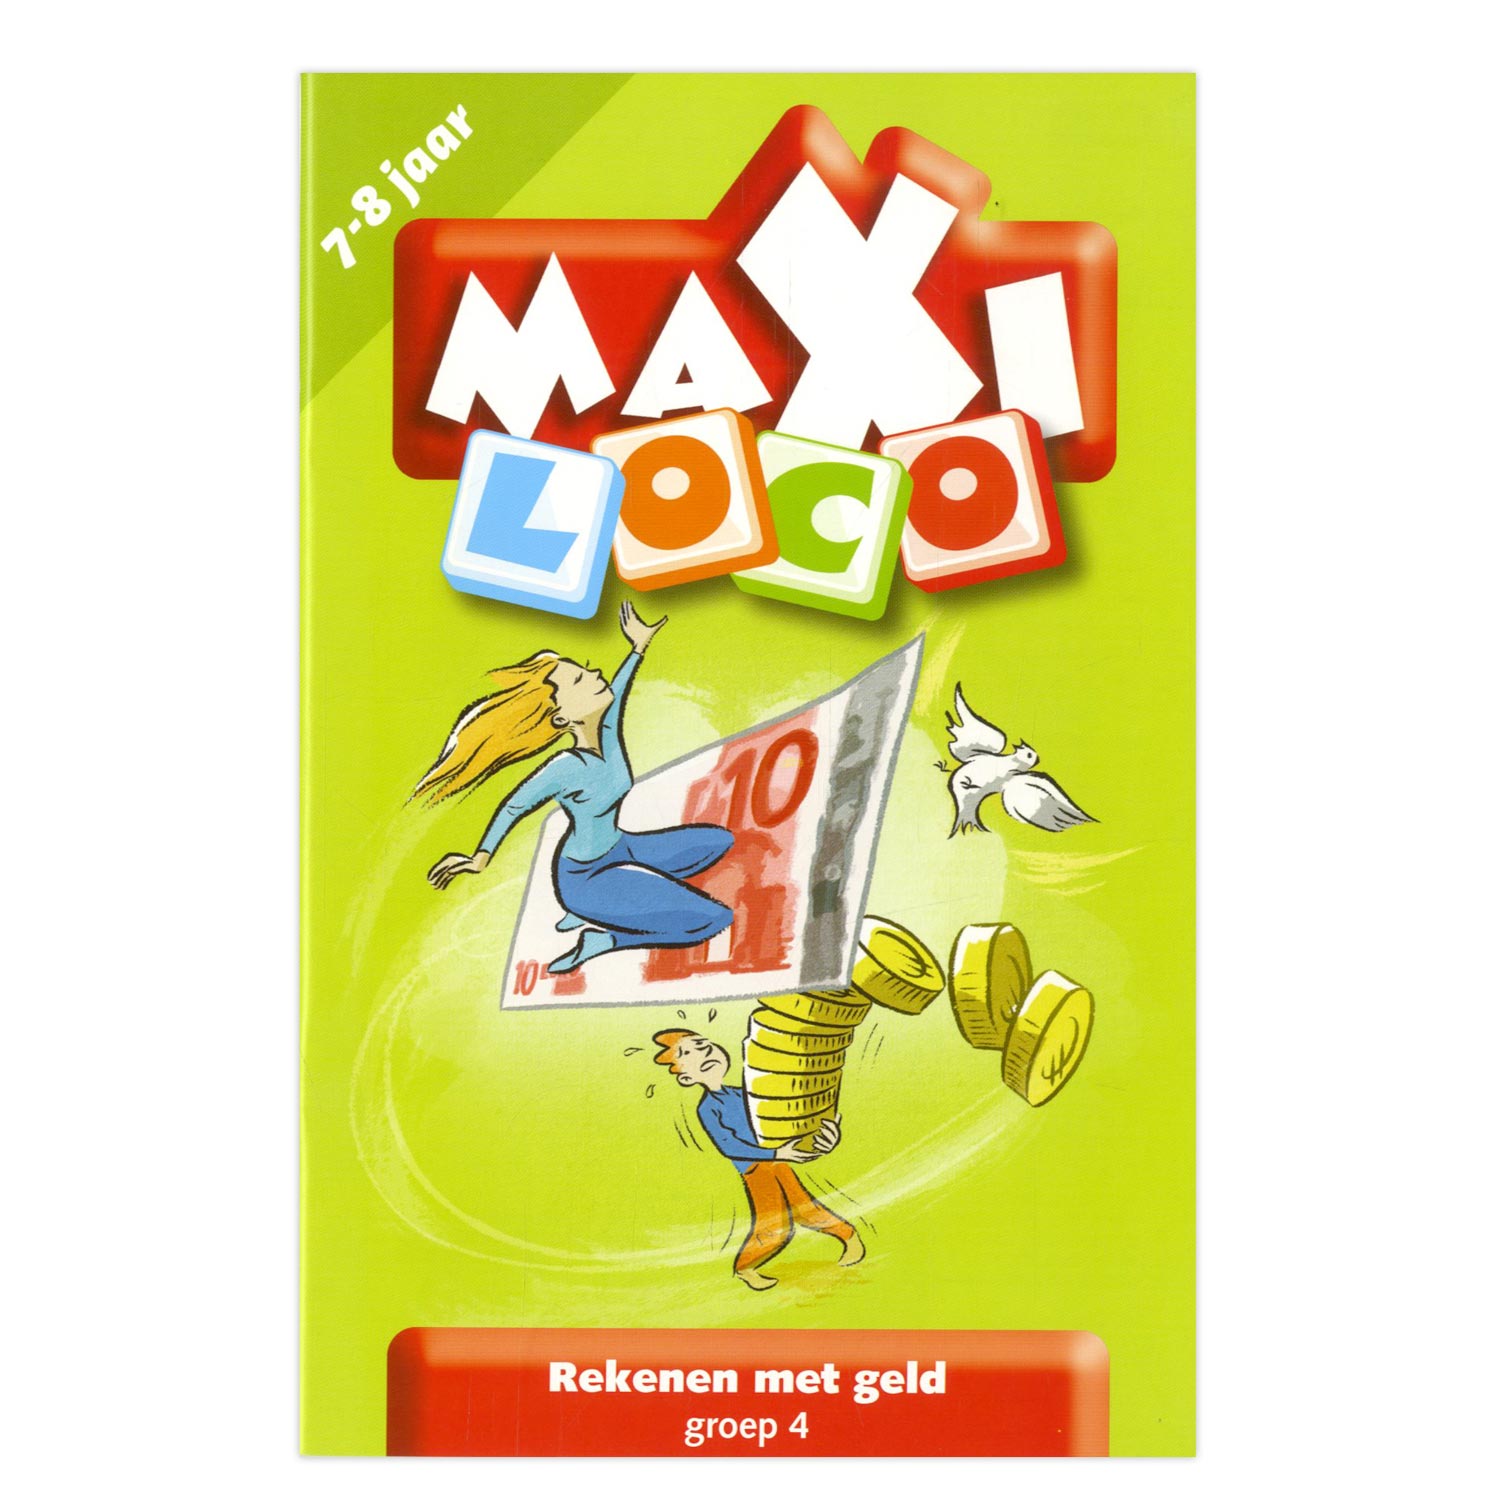 Onwijs Maxi Loco - Rekenen met geld (groep 4) online kopen | Lobbes Speelgoed BR-73